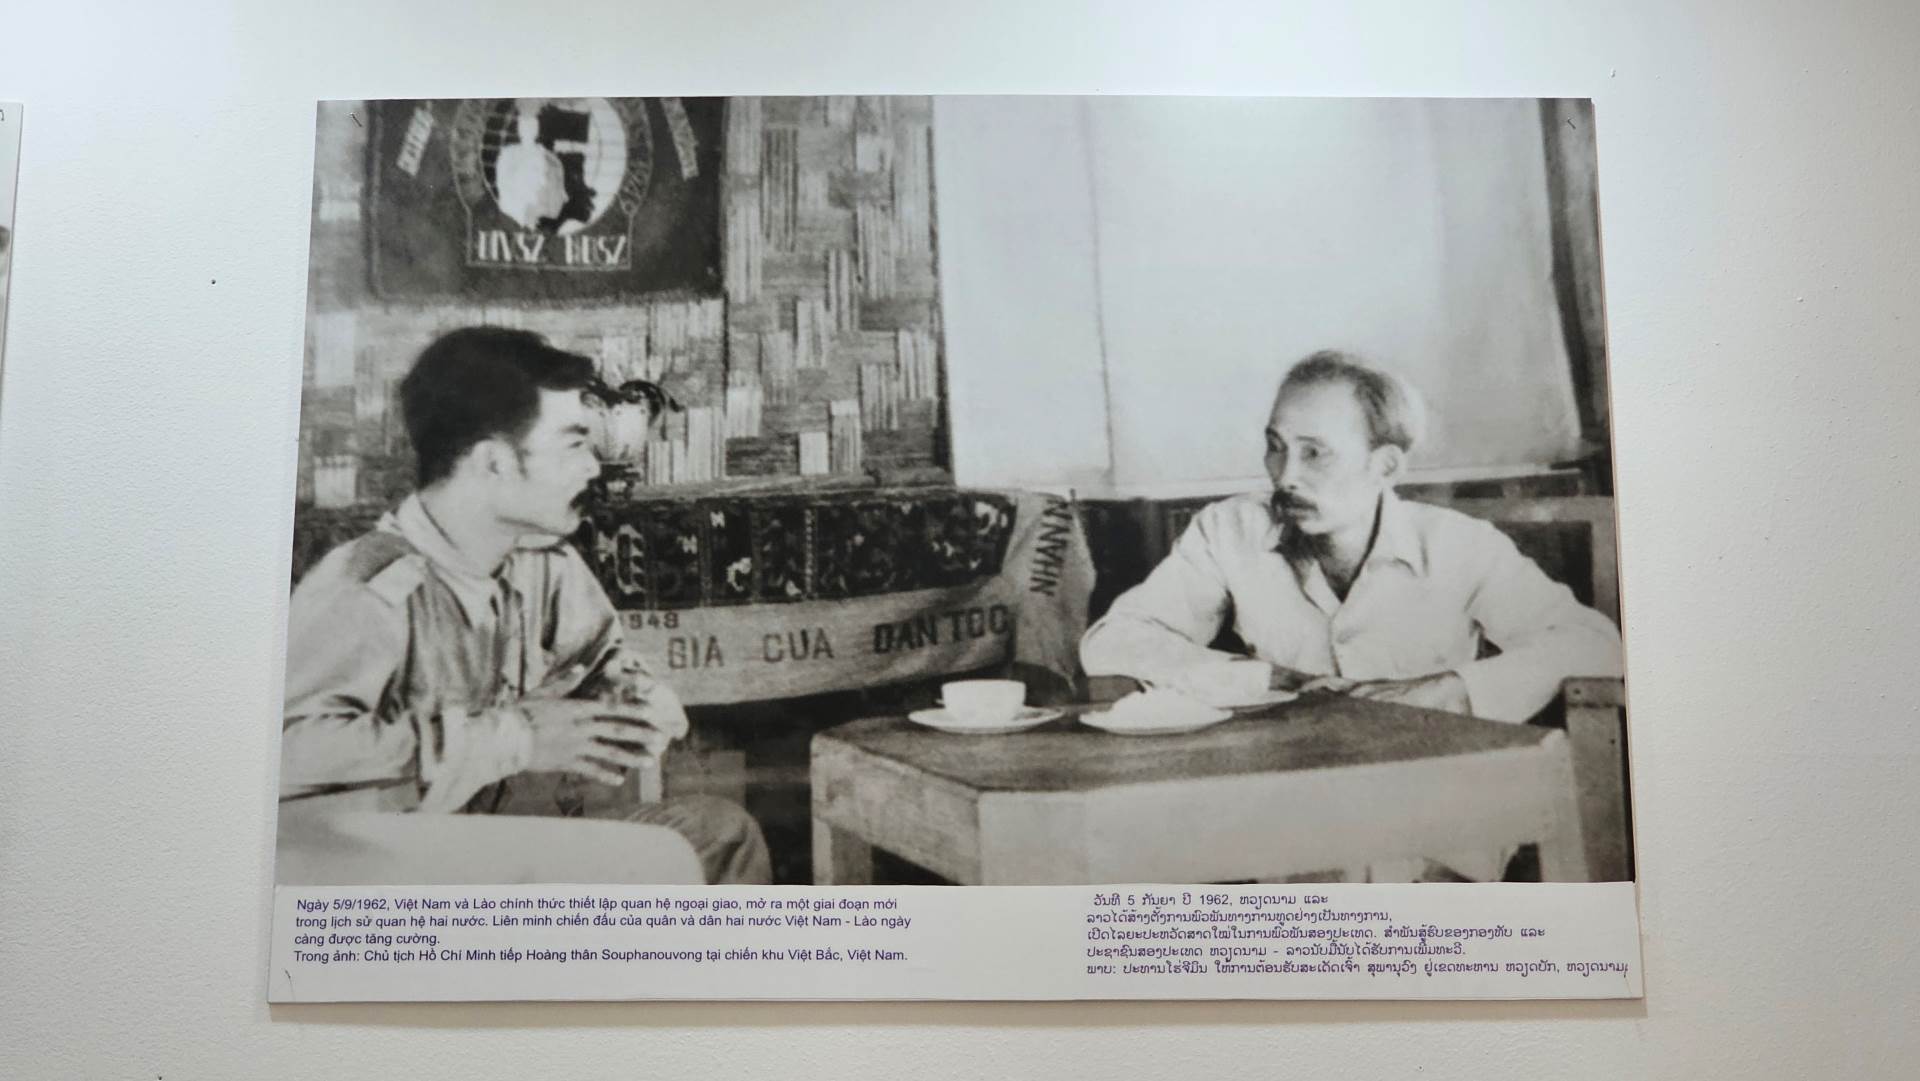  Bức ảnh Chủ tịch Hồ Chí Minh tiếp Hoàng thân Souphanouvong tại chiến khu Việt Bắc.  Bức ảnh Chủ tịch Hồ Chí Minh tiếp Hoàng thân Souphanouvong tại chiến khu Việt Bắc. 